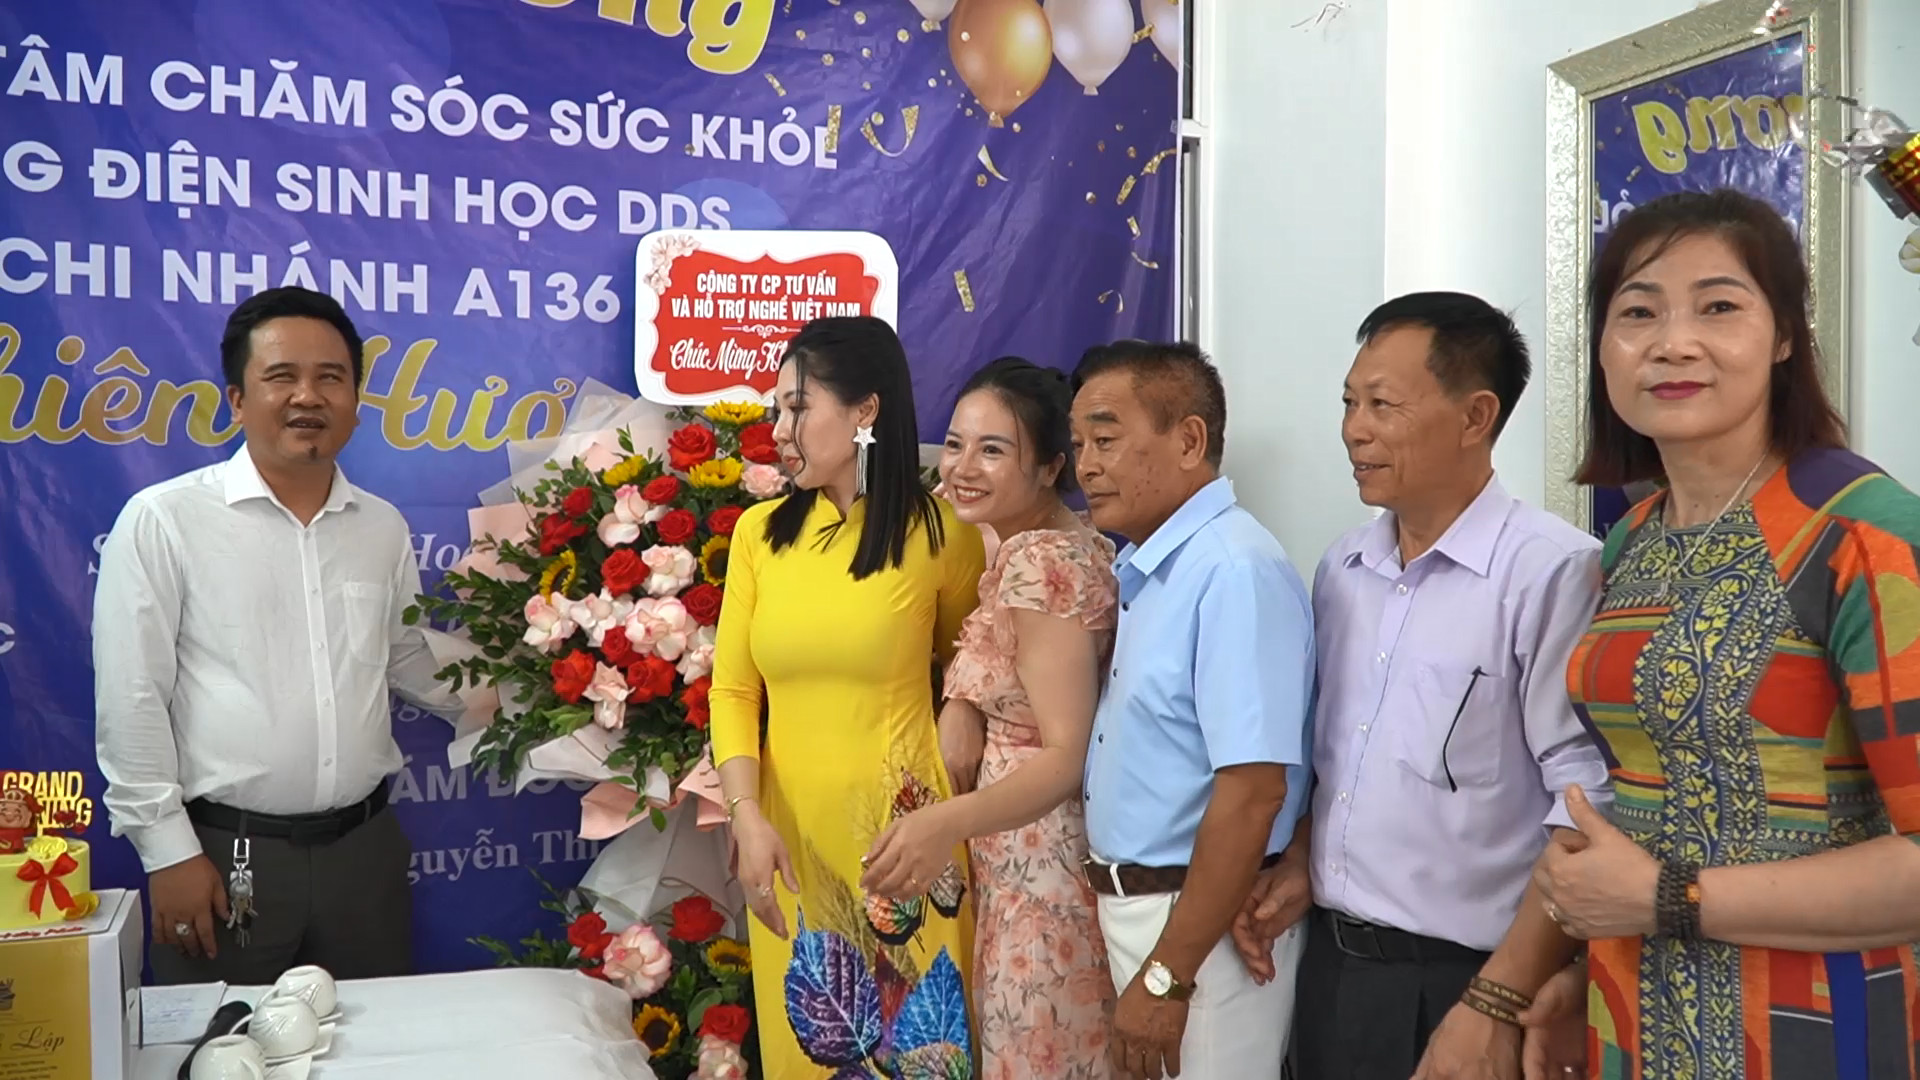 Video ra mắt Trung tâm chăm sóc sức khỏe và chuyển giao công nghệ DDS Thiên Hương - Chi nhánh A136 (Ngô Quyền, Hải Phòng) 